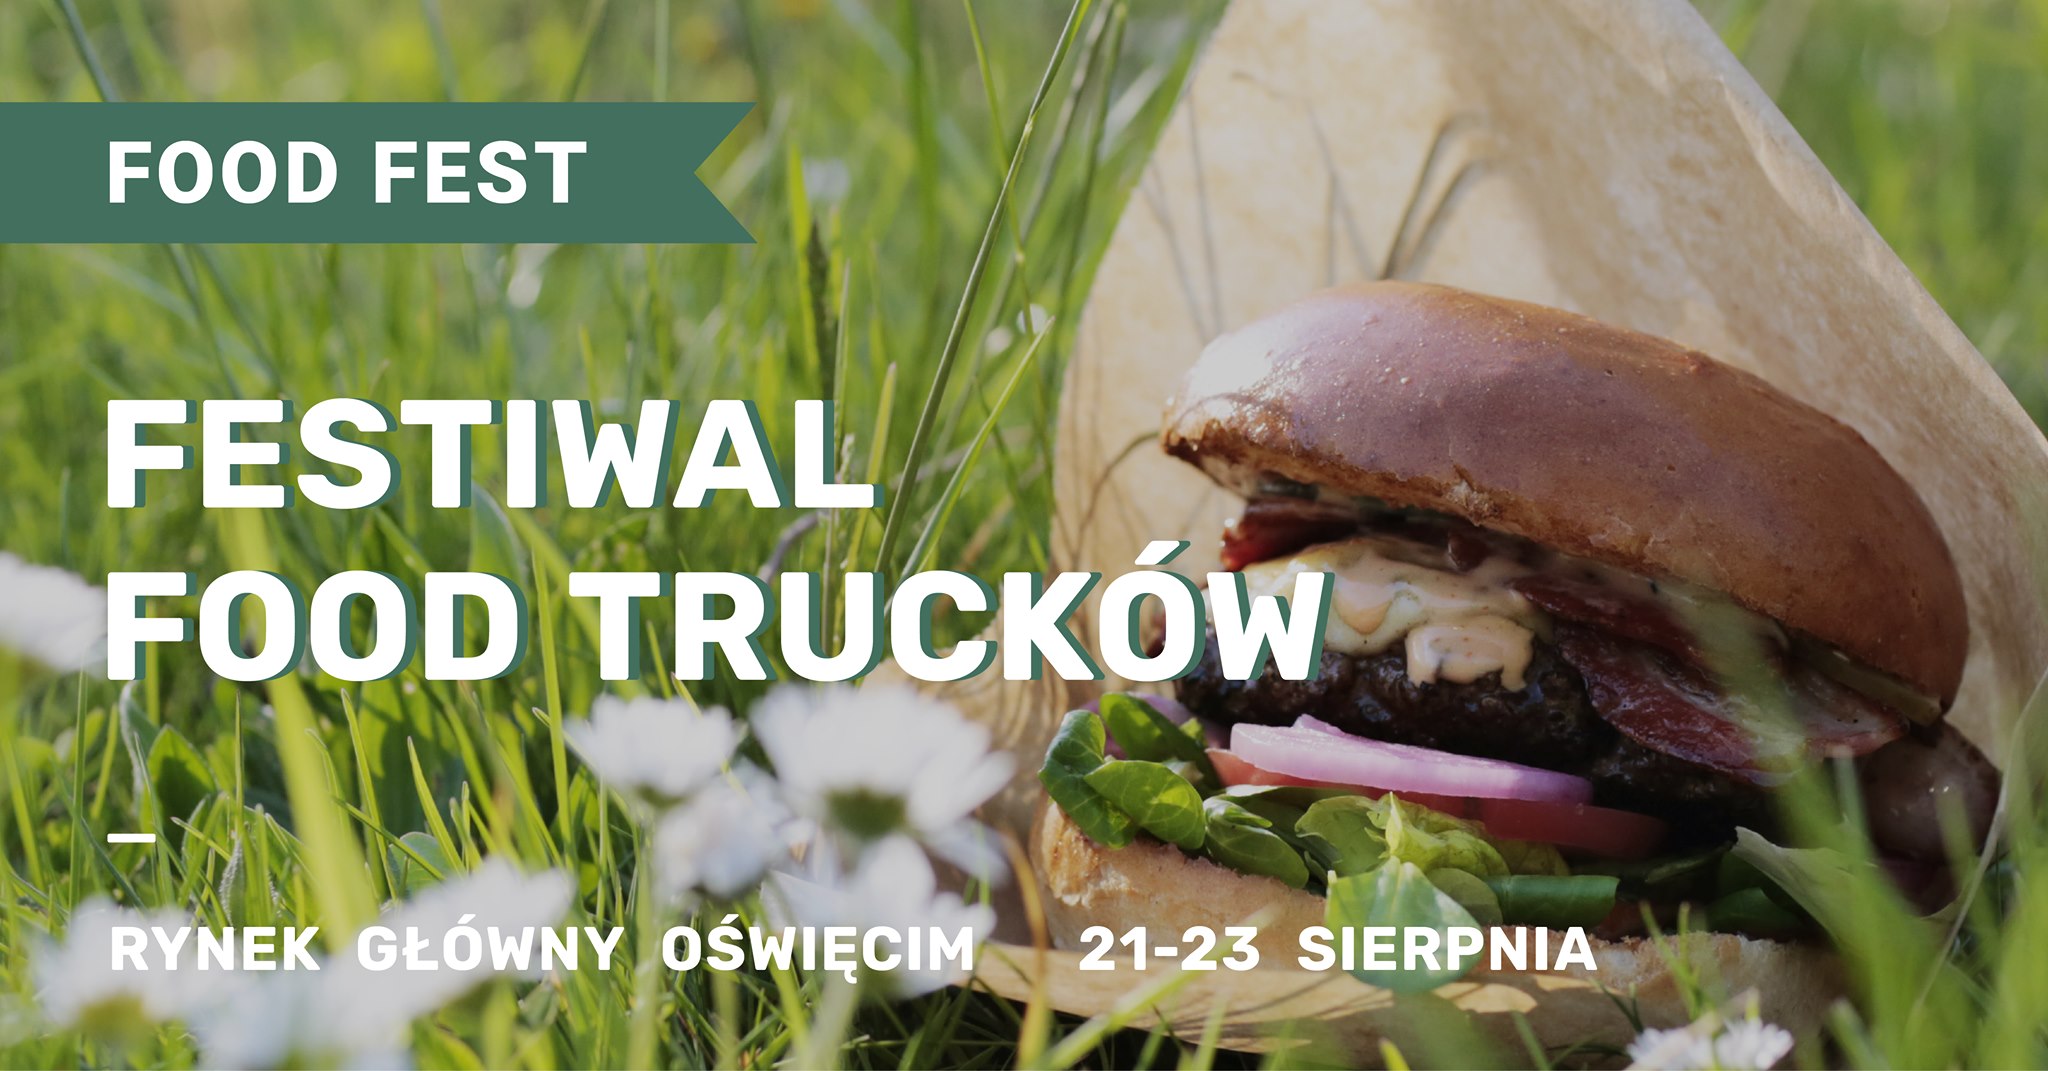 Food Fest!Oświęcim - Lato w Mieście! Festiwal Food Trucków Rynek Główny 21-23 Sierpnia zrodlo facebok oswiecim pl